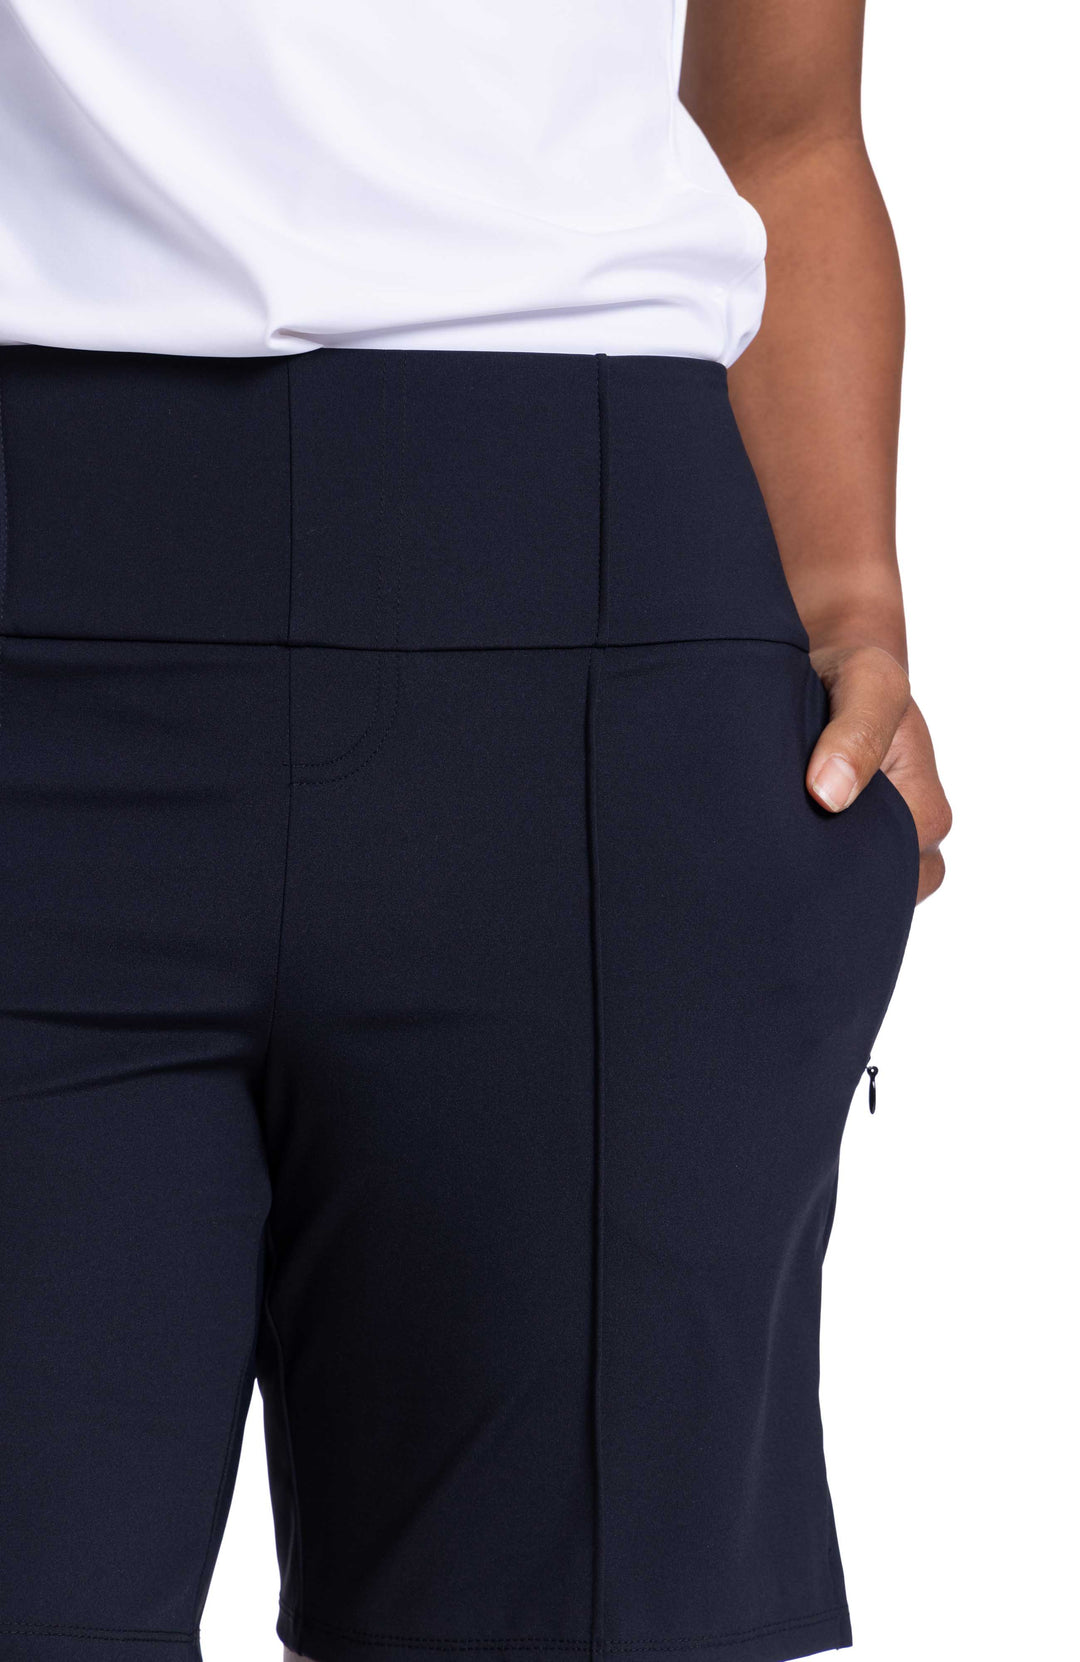 Women's medium length black golf short